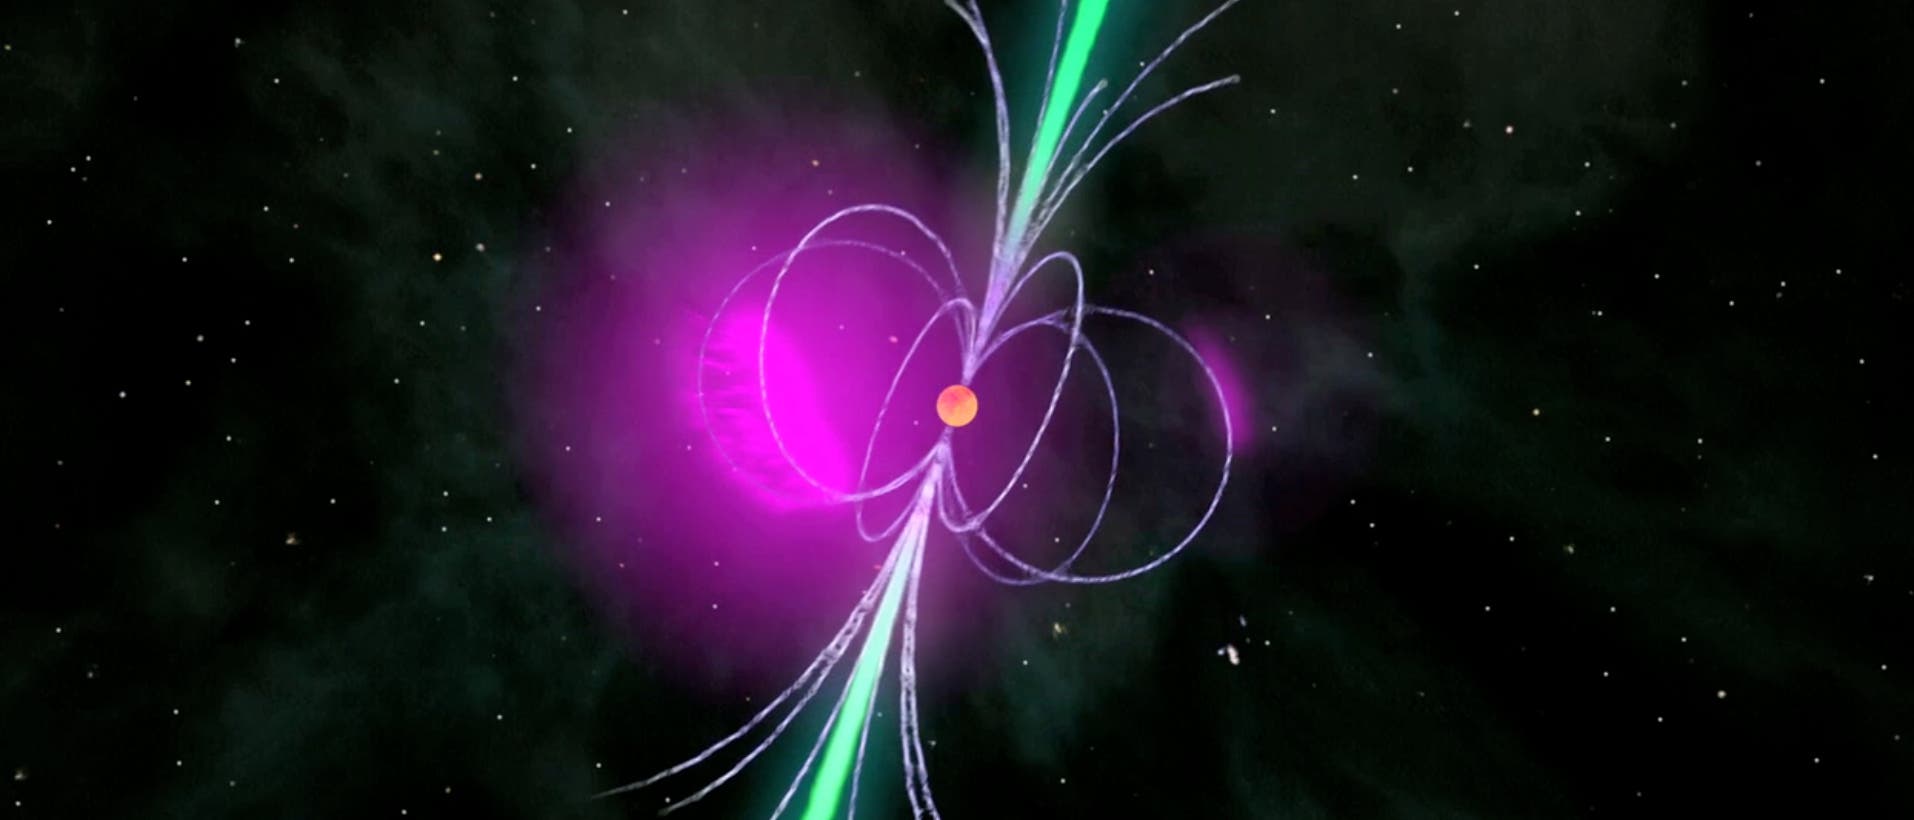 Gammapulsar mit Radiowellen (grün) und Gammastrahlen (violett)